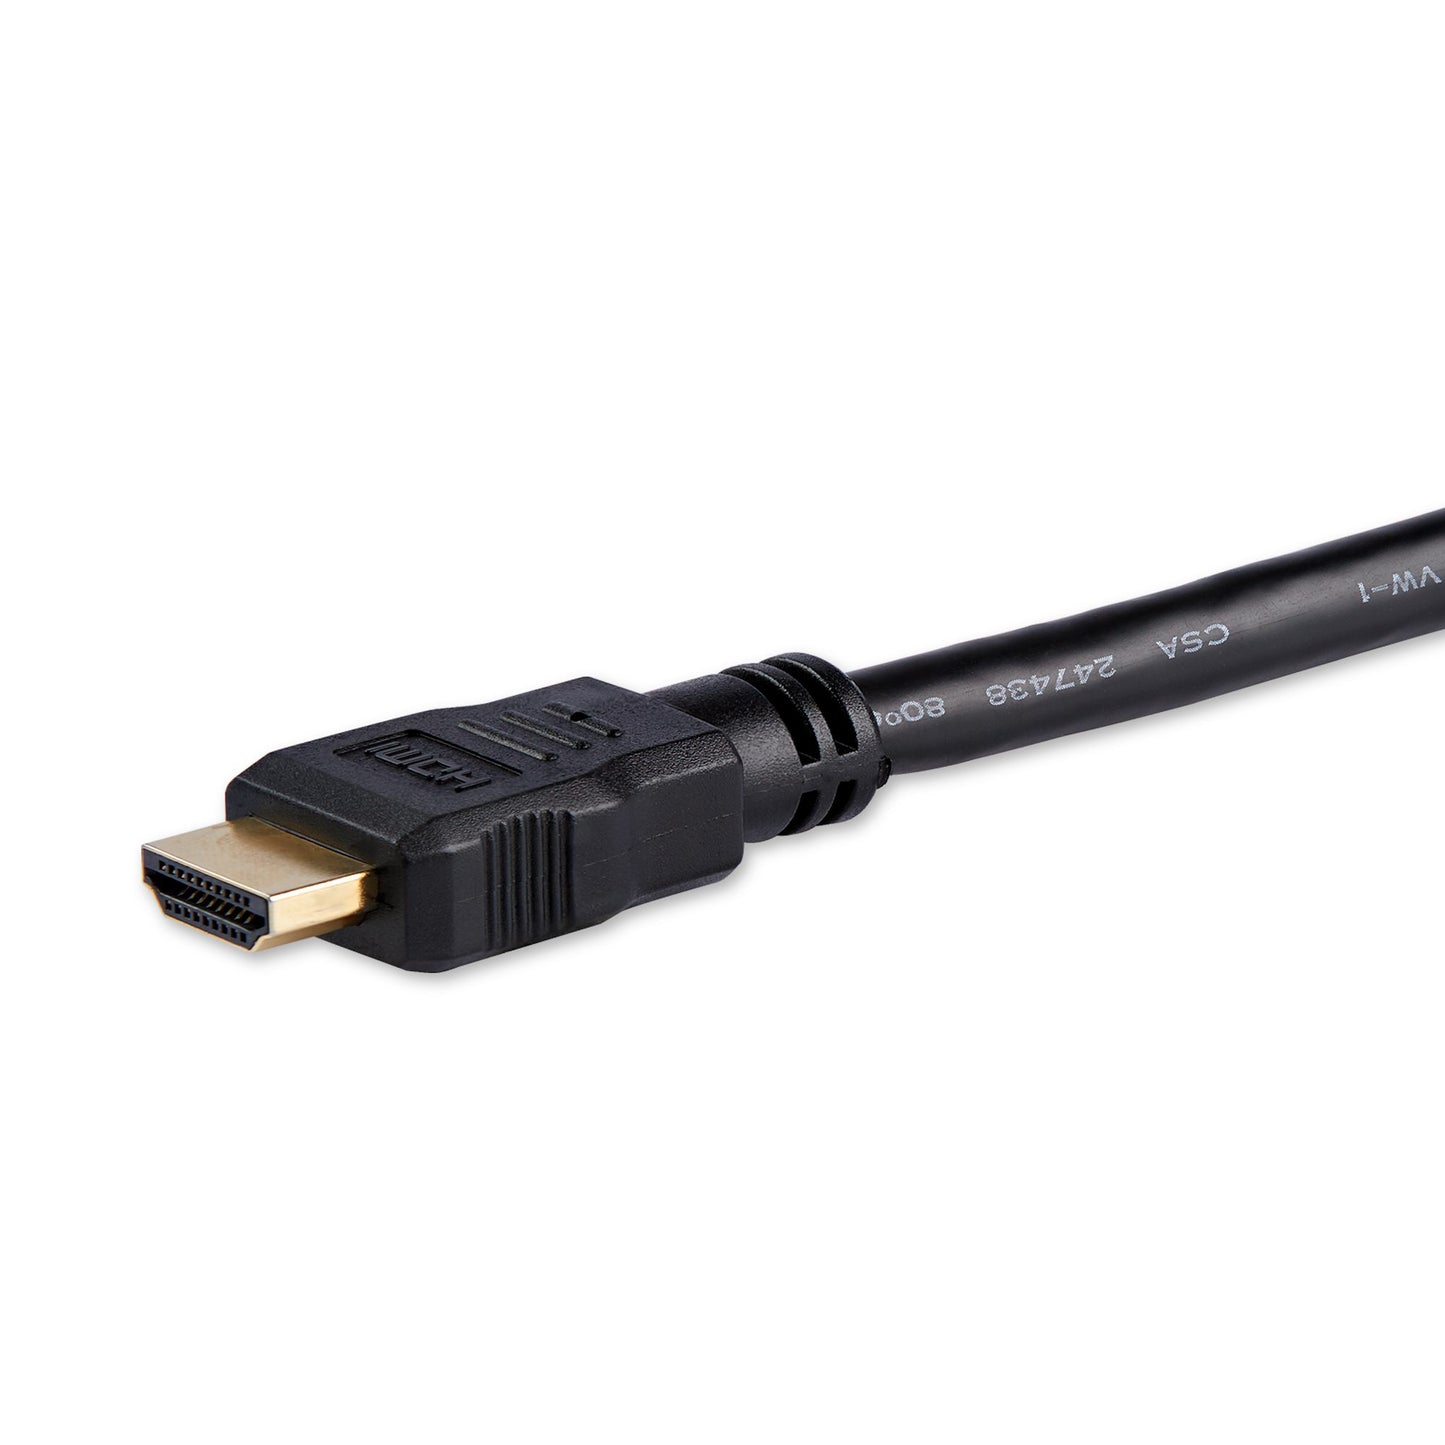 Adaptador STARTECH de 20cm HDMI® a DVI - DVI-D Hembra - HDMI Macho - Cable Convertidor Video, negro